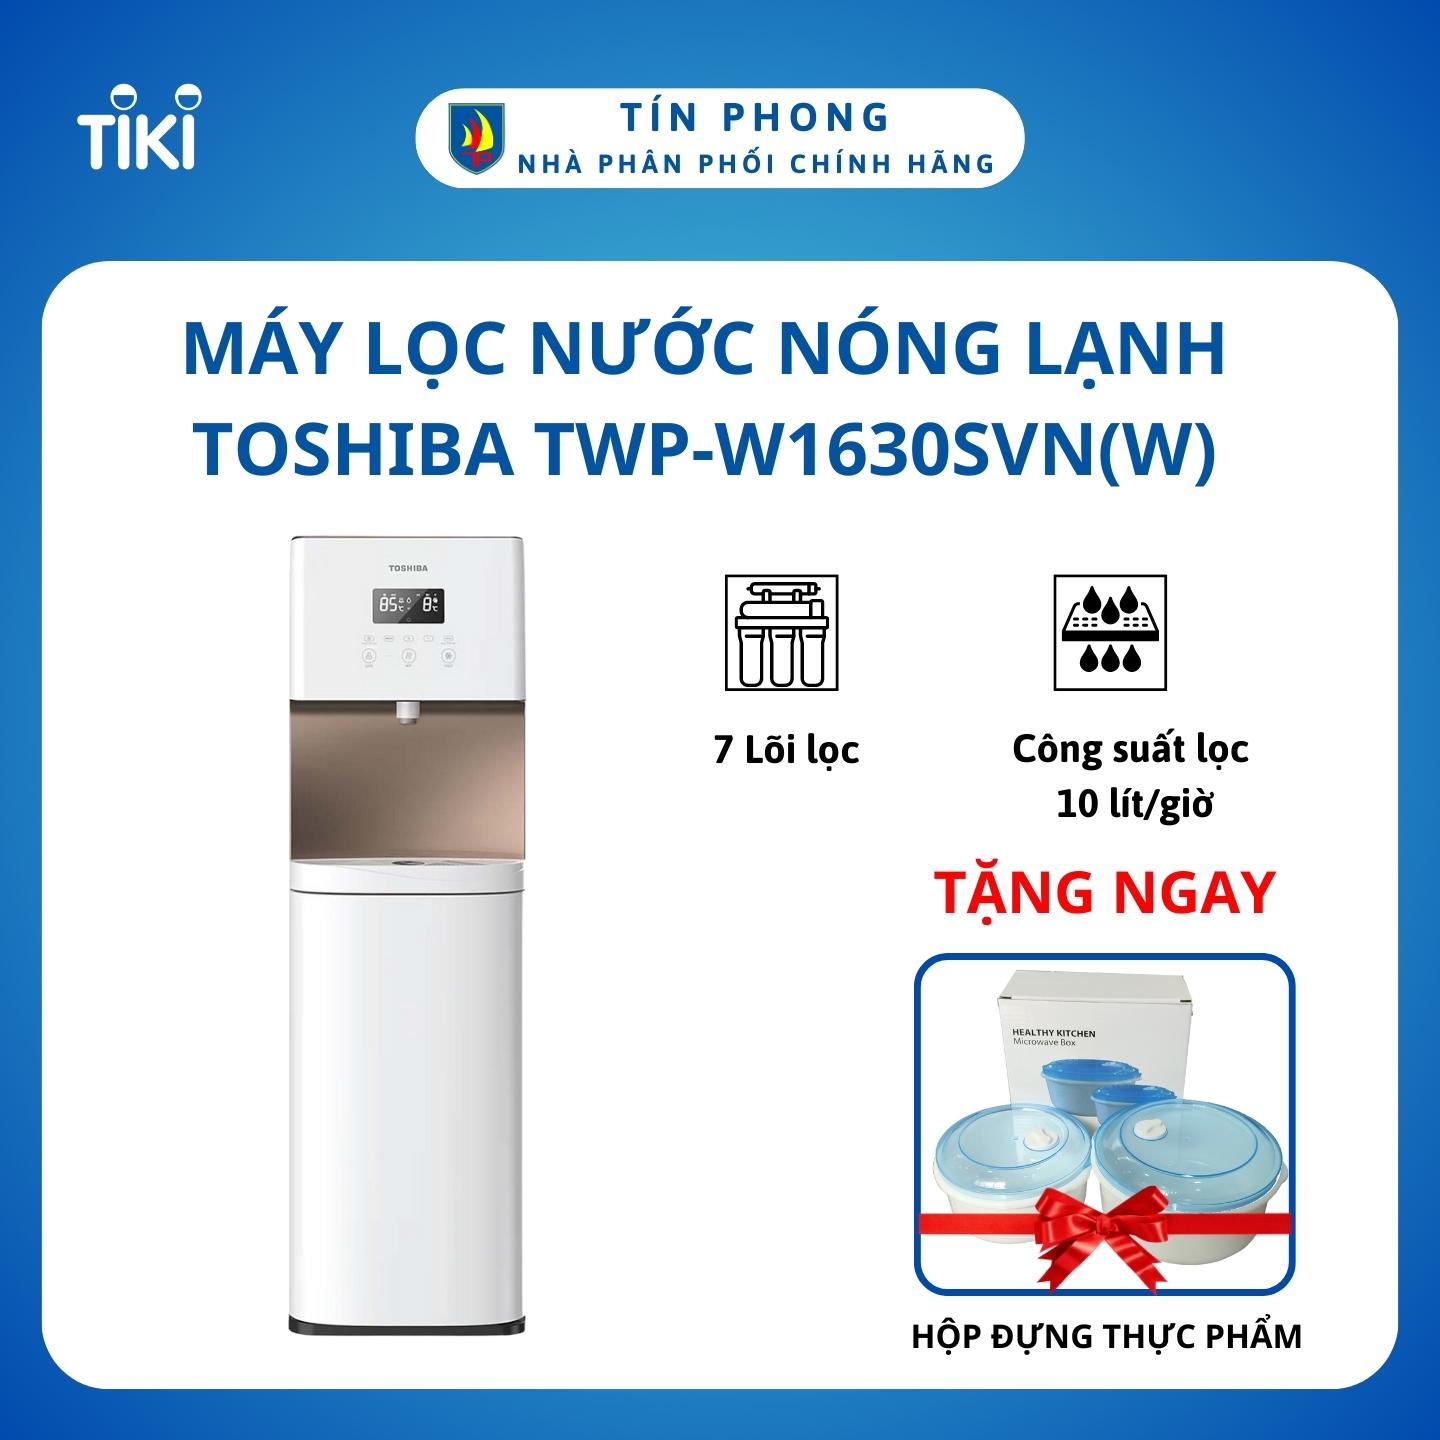 Máy lọc nước nóng lạnh Toshiba TWP-W1630SVN(W) - Hệ thống 7 lõi lọc - Diệt khuẩn bằng tia UV và RO - Tự động báo thay lõi - Hàng chính hãng